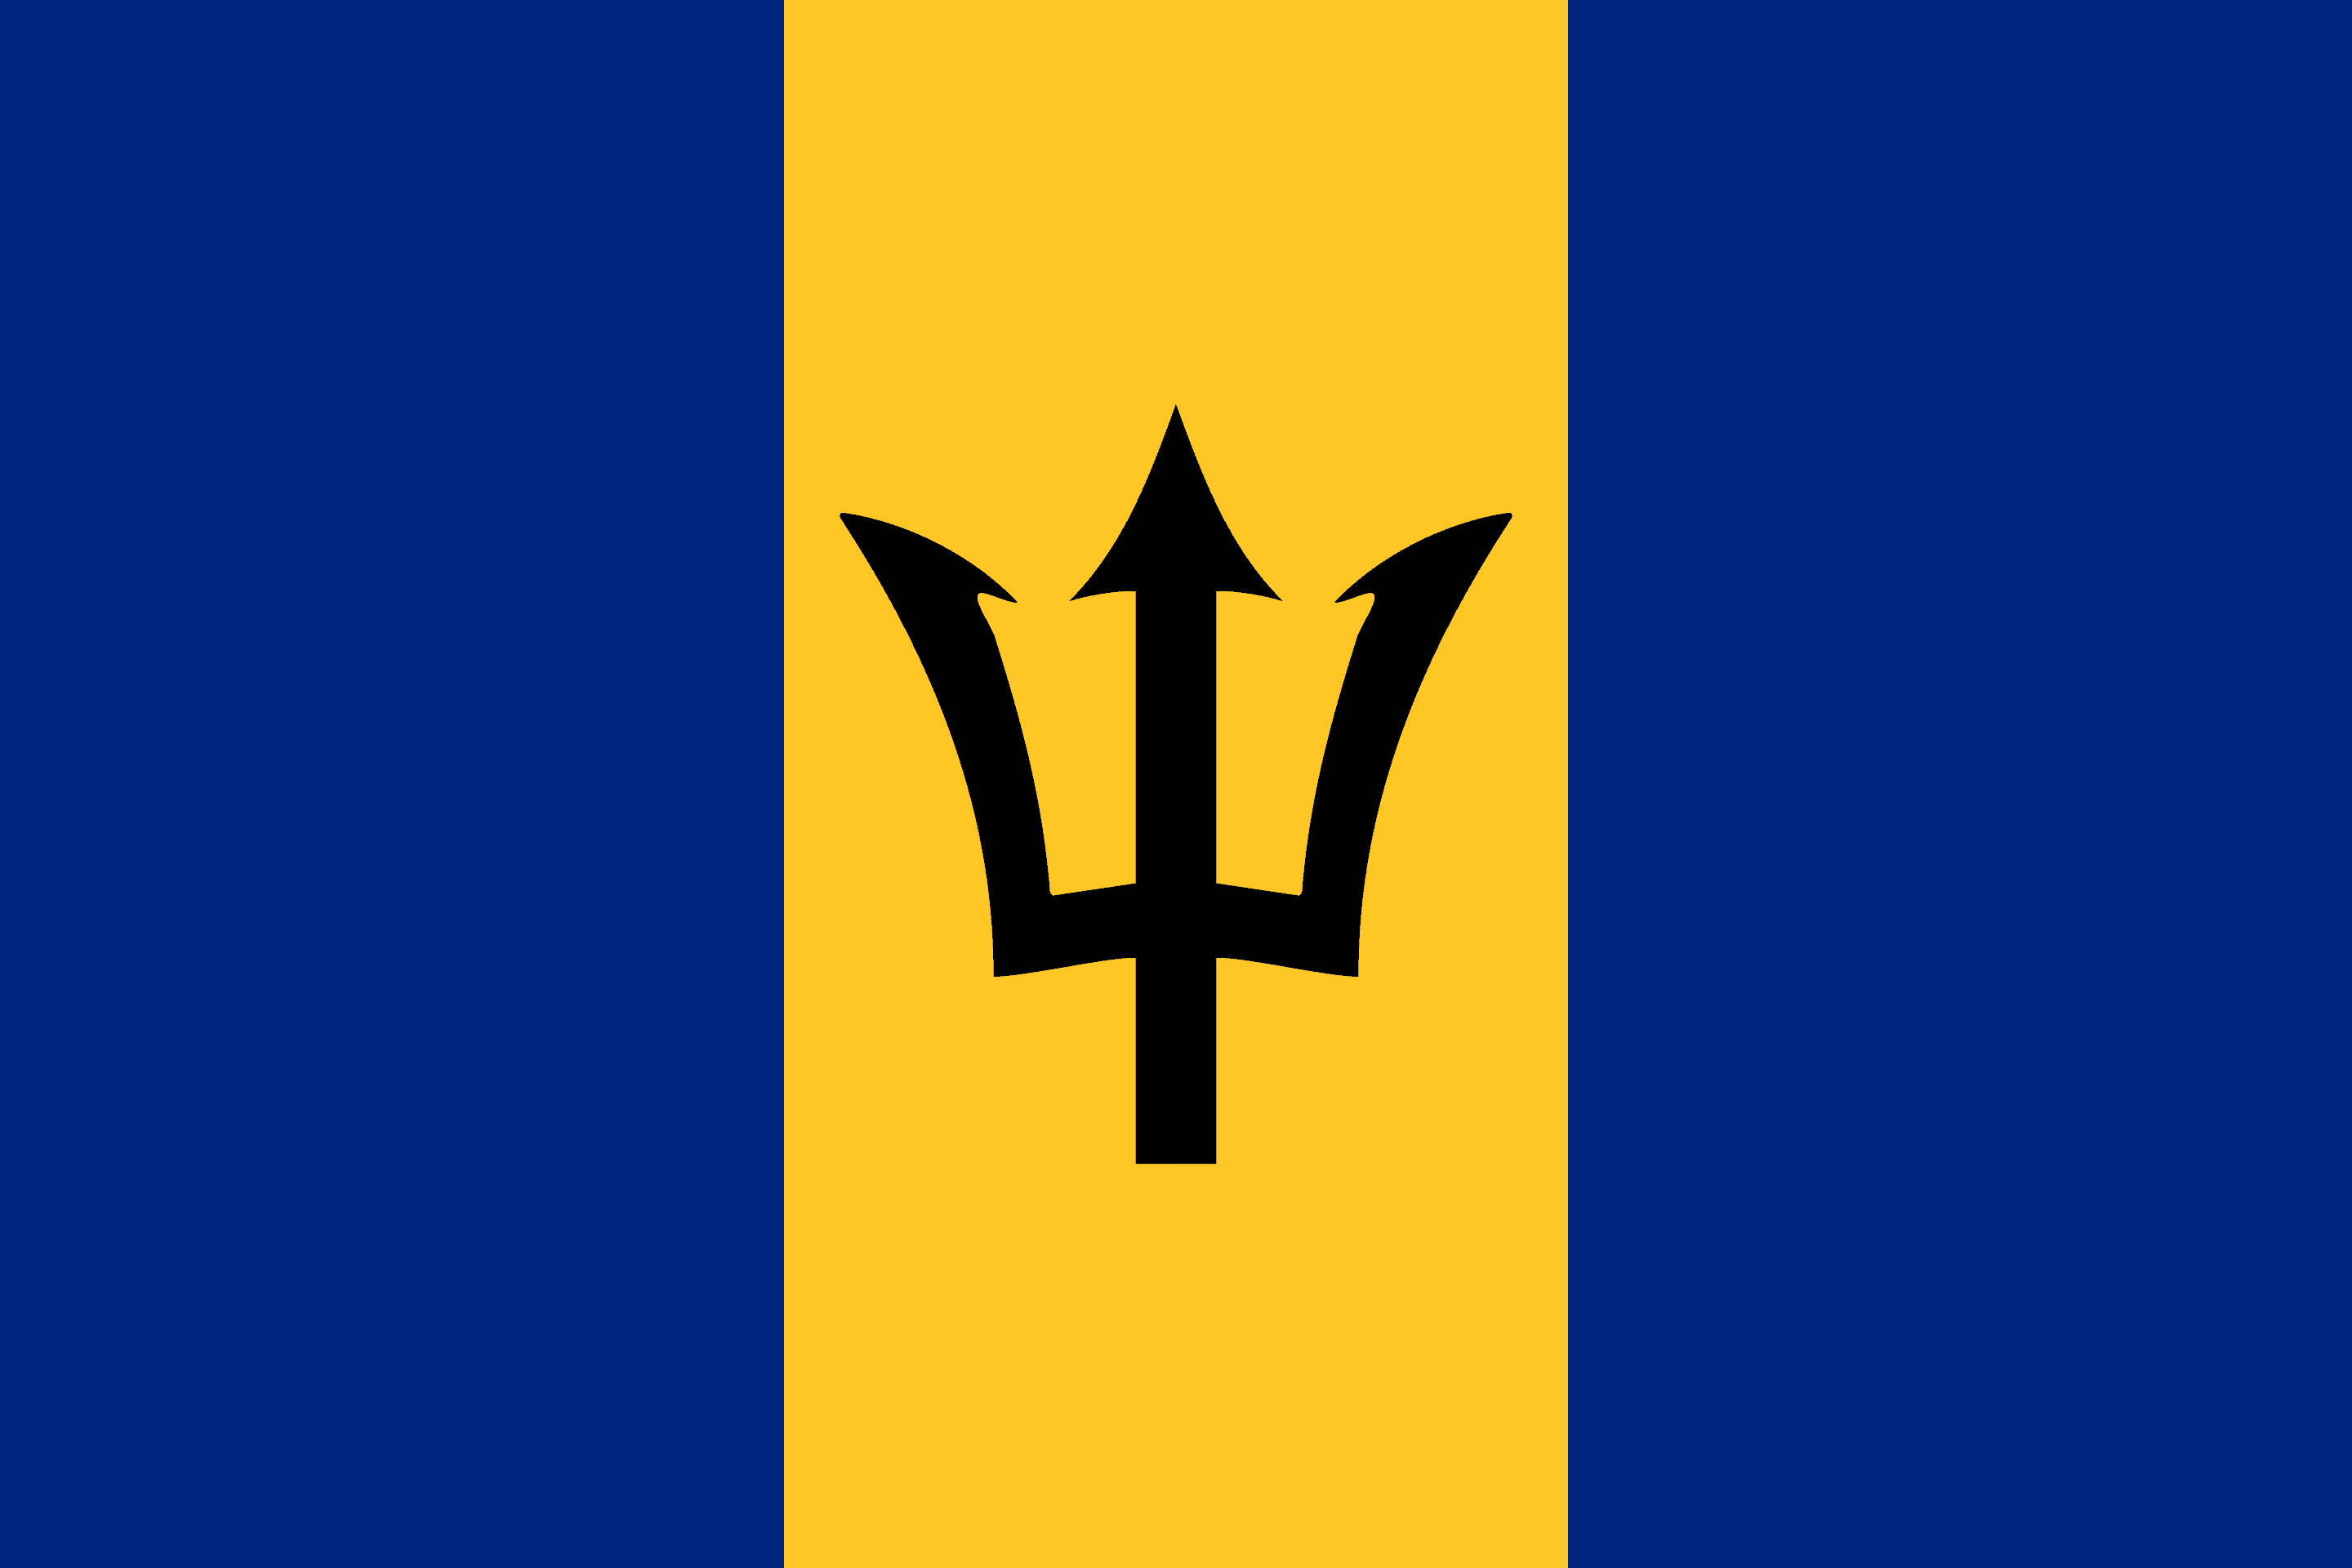 Barbados Flag - Barbados Drone Laws